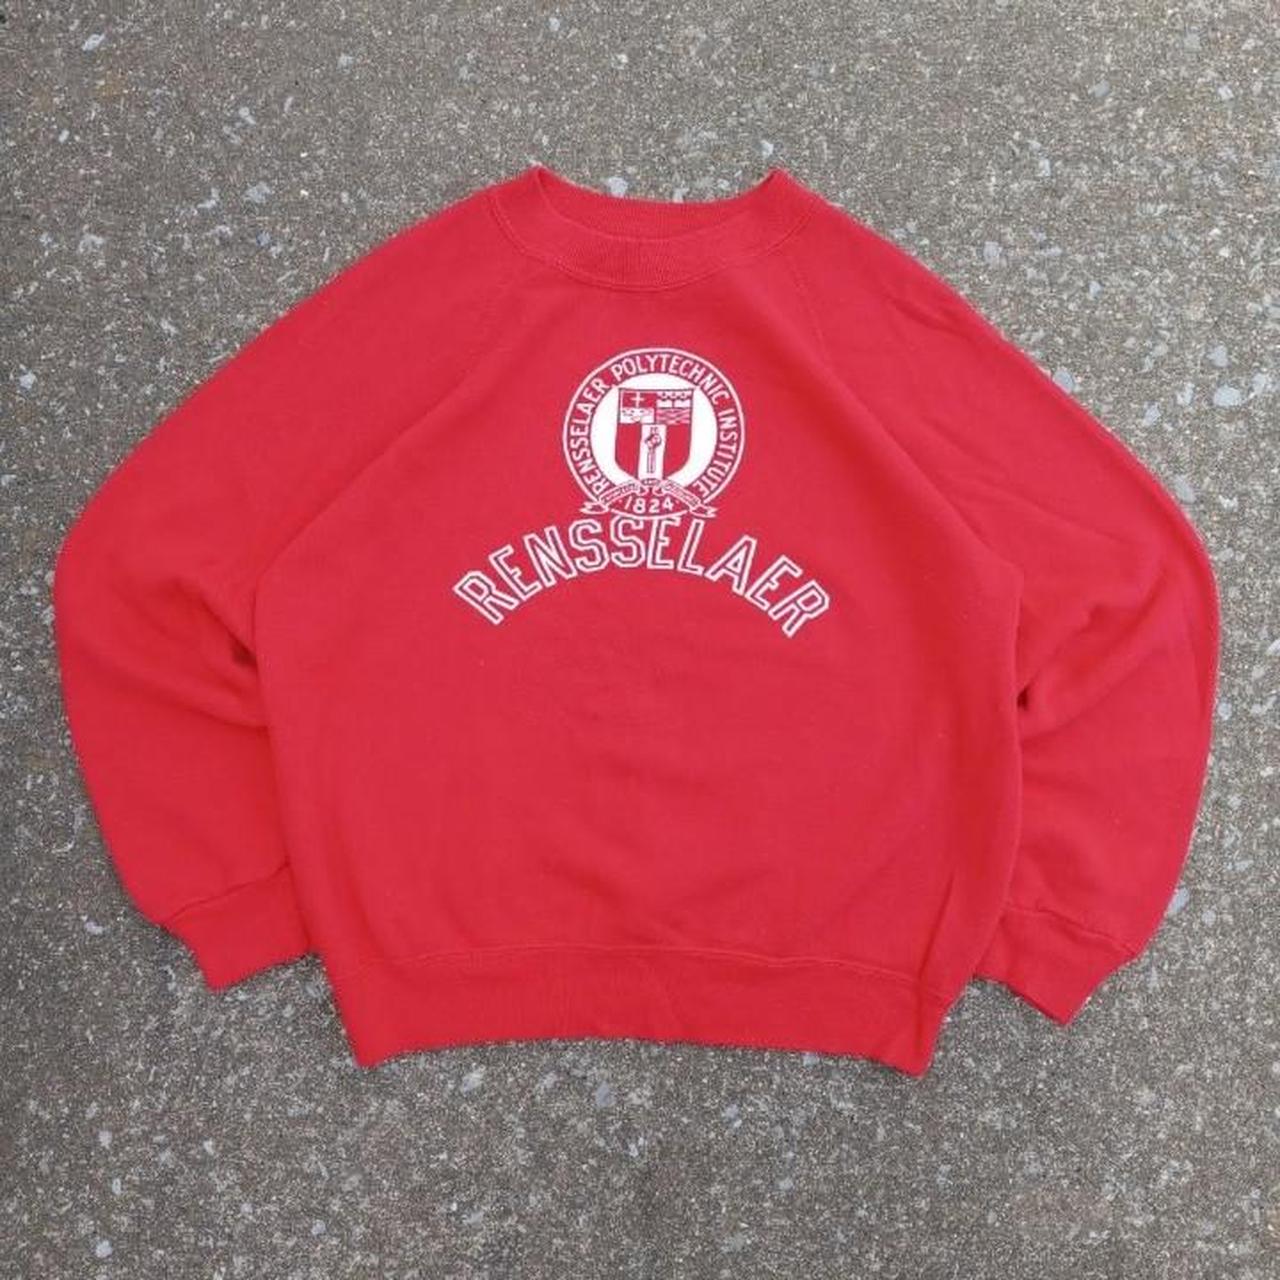 American Vintage Men's Sweatshirt - Red - M